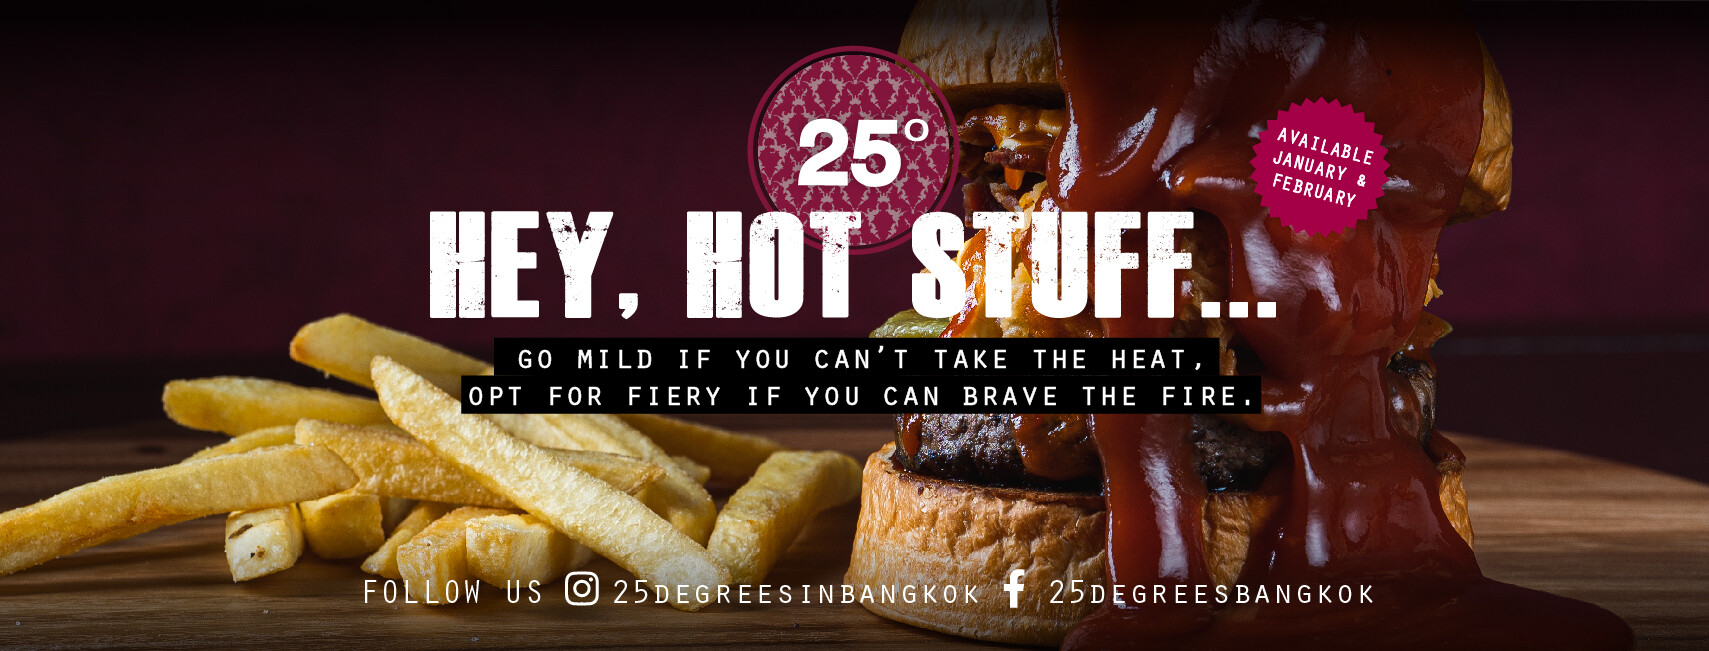 ร้อนแรงเกินต้านทานกับเบอร์เกอร์สุดลิมิเต็ดโฉมใหม่จาก 25 Degrees Bangkok อย่าง Hot Sauce Burger!